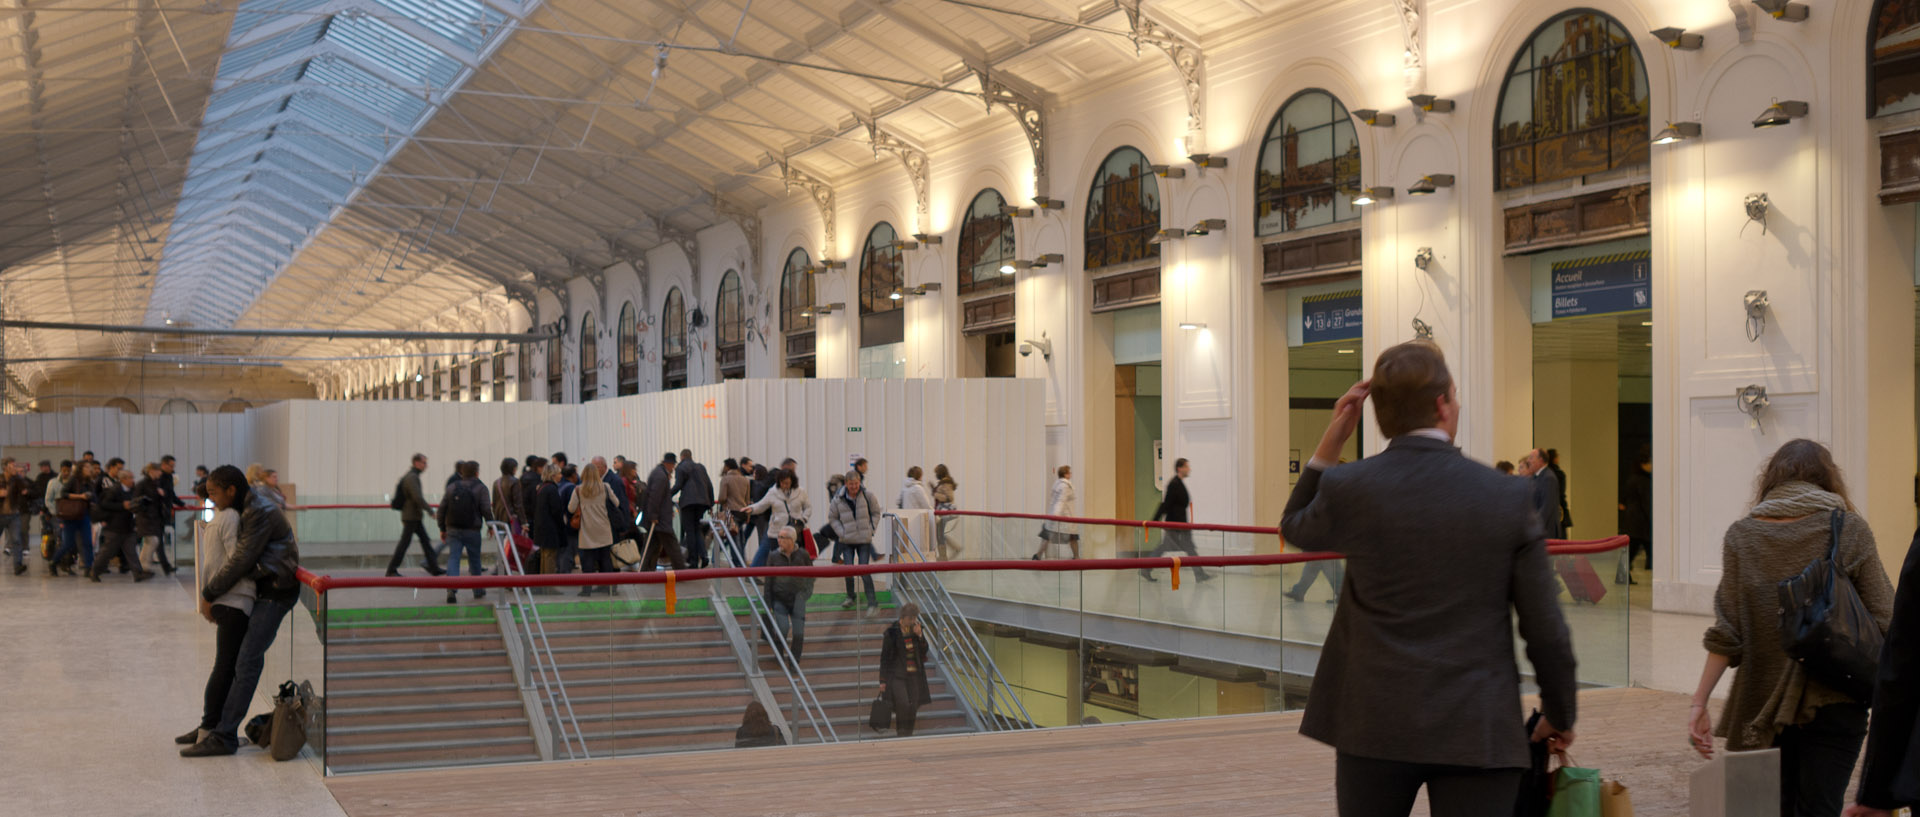 La salle des pas perdus en travaux, gare Saint-Lazare, à Paris.